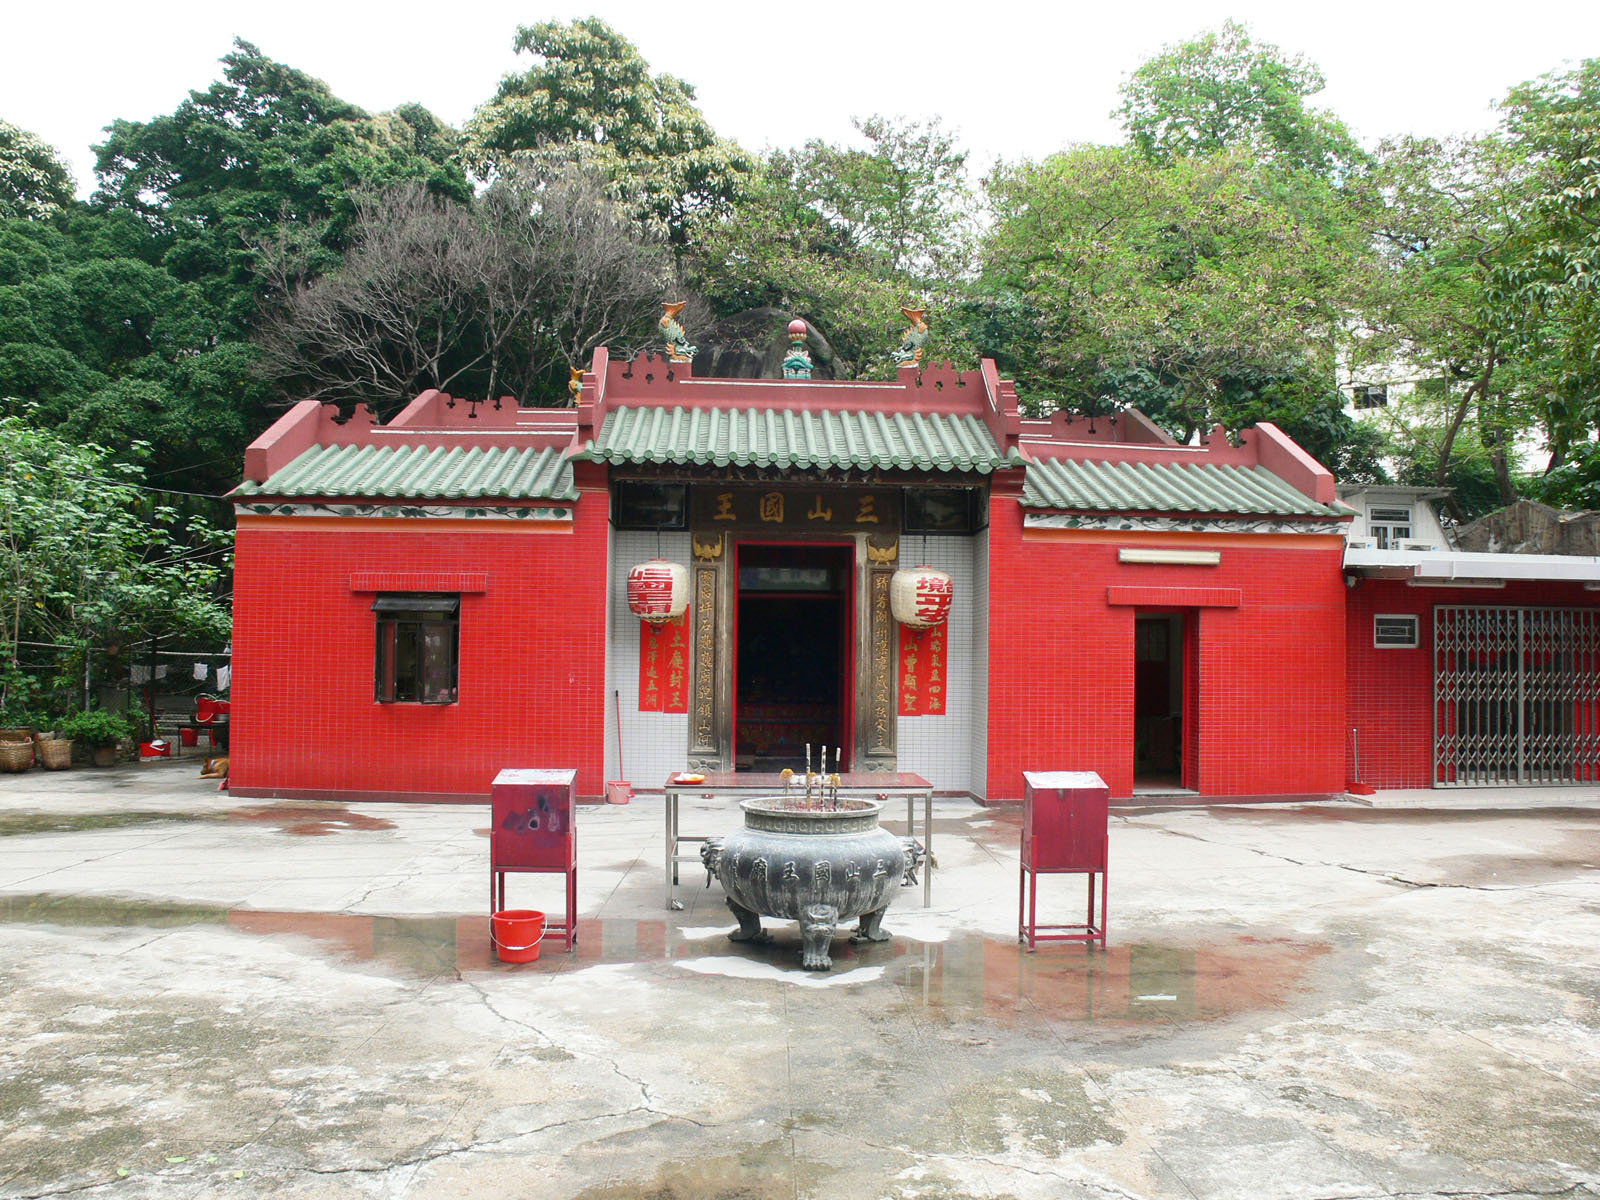 Photo 2: Sam Shan Kwok Wong Temple (Ngau Chi Wan)